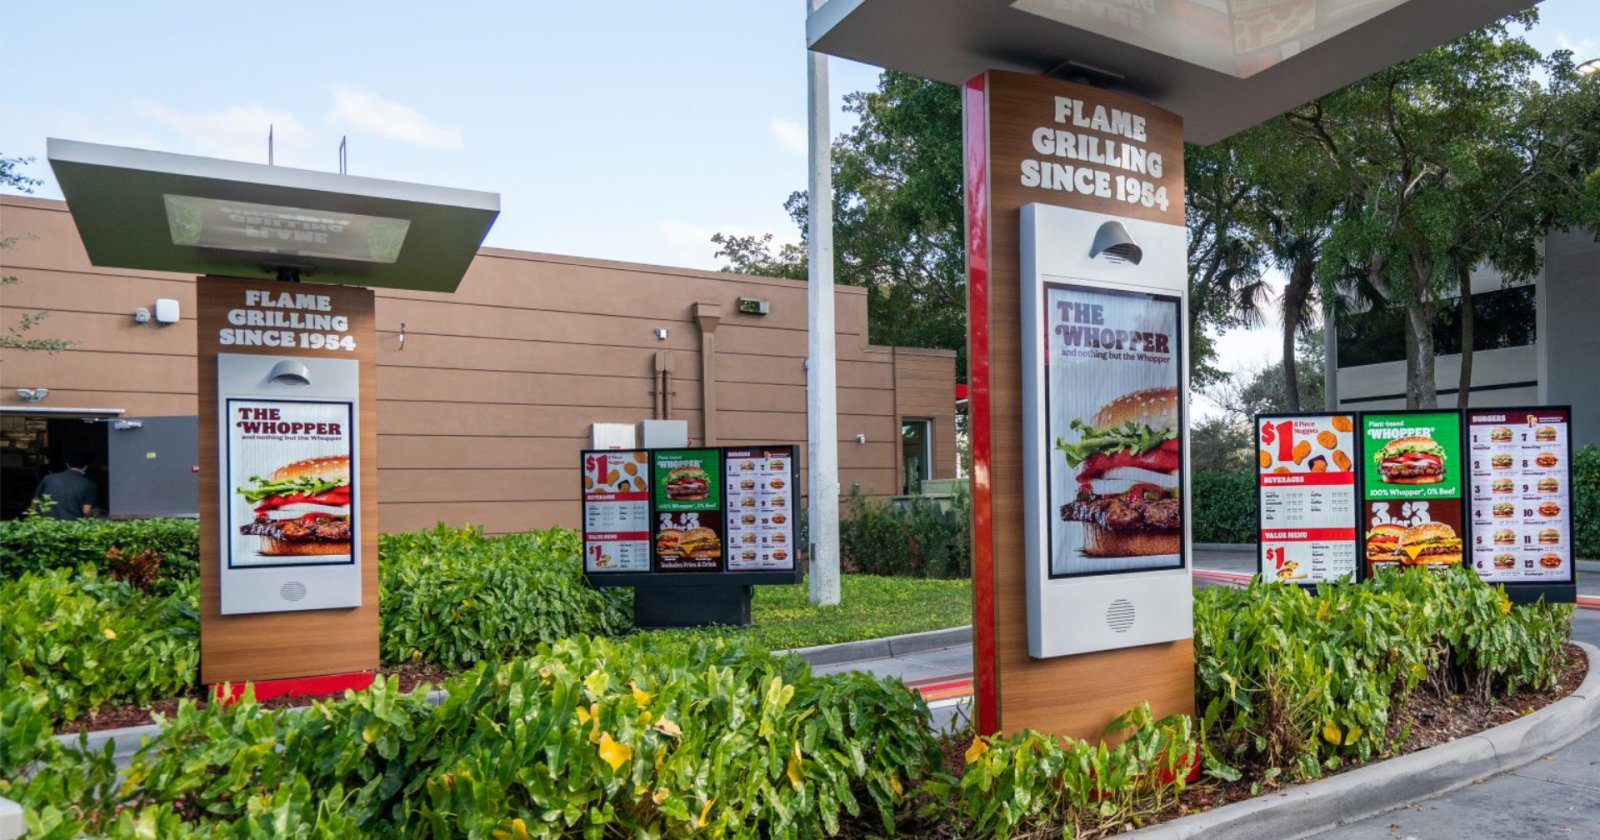 ภาพเพื่อการโฆษณา? Burger King ถูกฟ้องหลังทำ Whopper เล็กกว่าภาพ